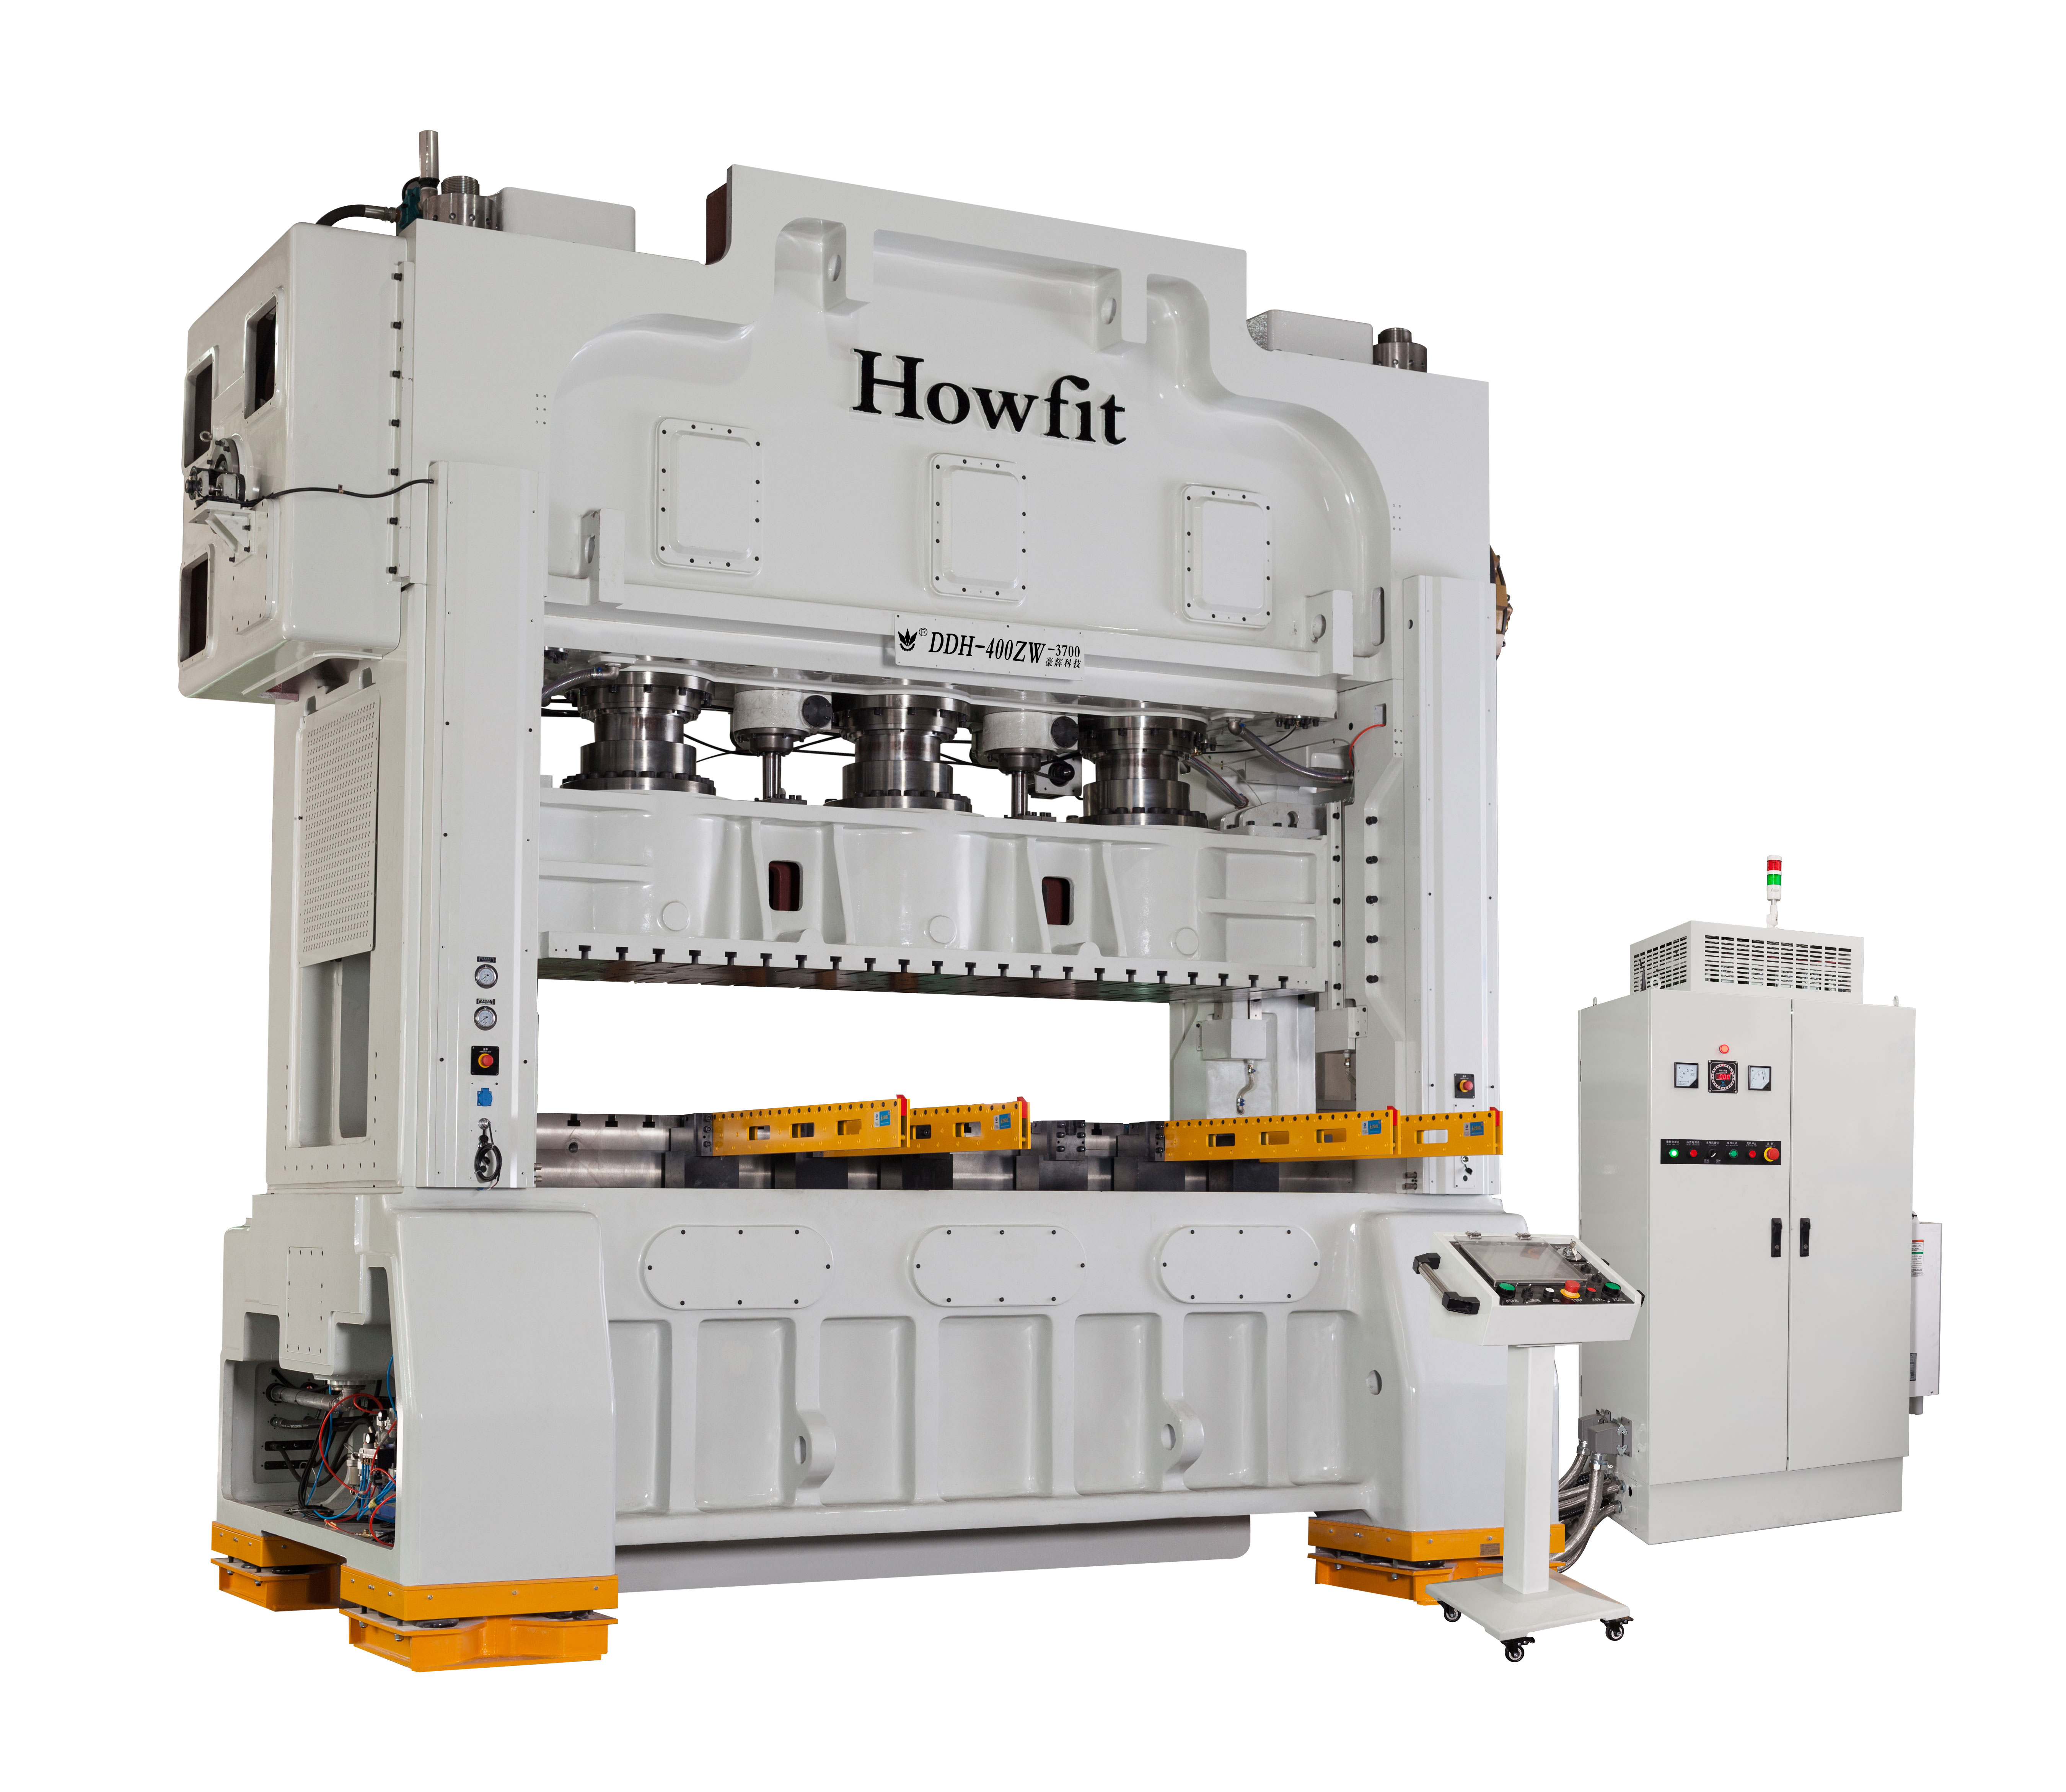 HOWFIT DDH 400T ZW-3700 विनिर्माण गुणवत्ता की गारंटी देता है